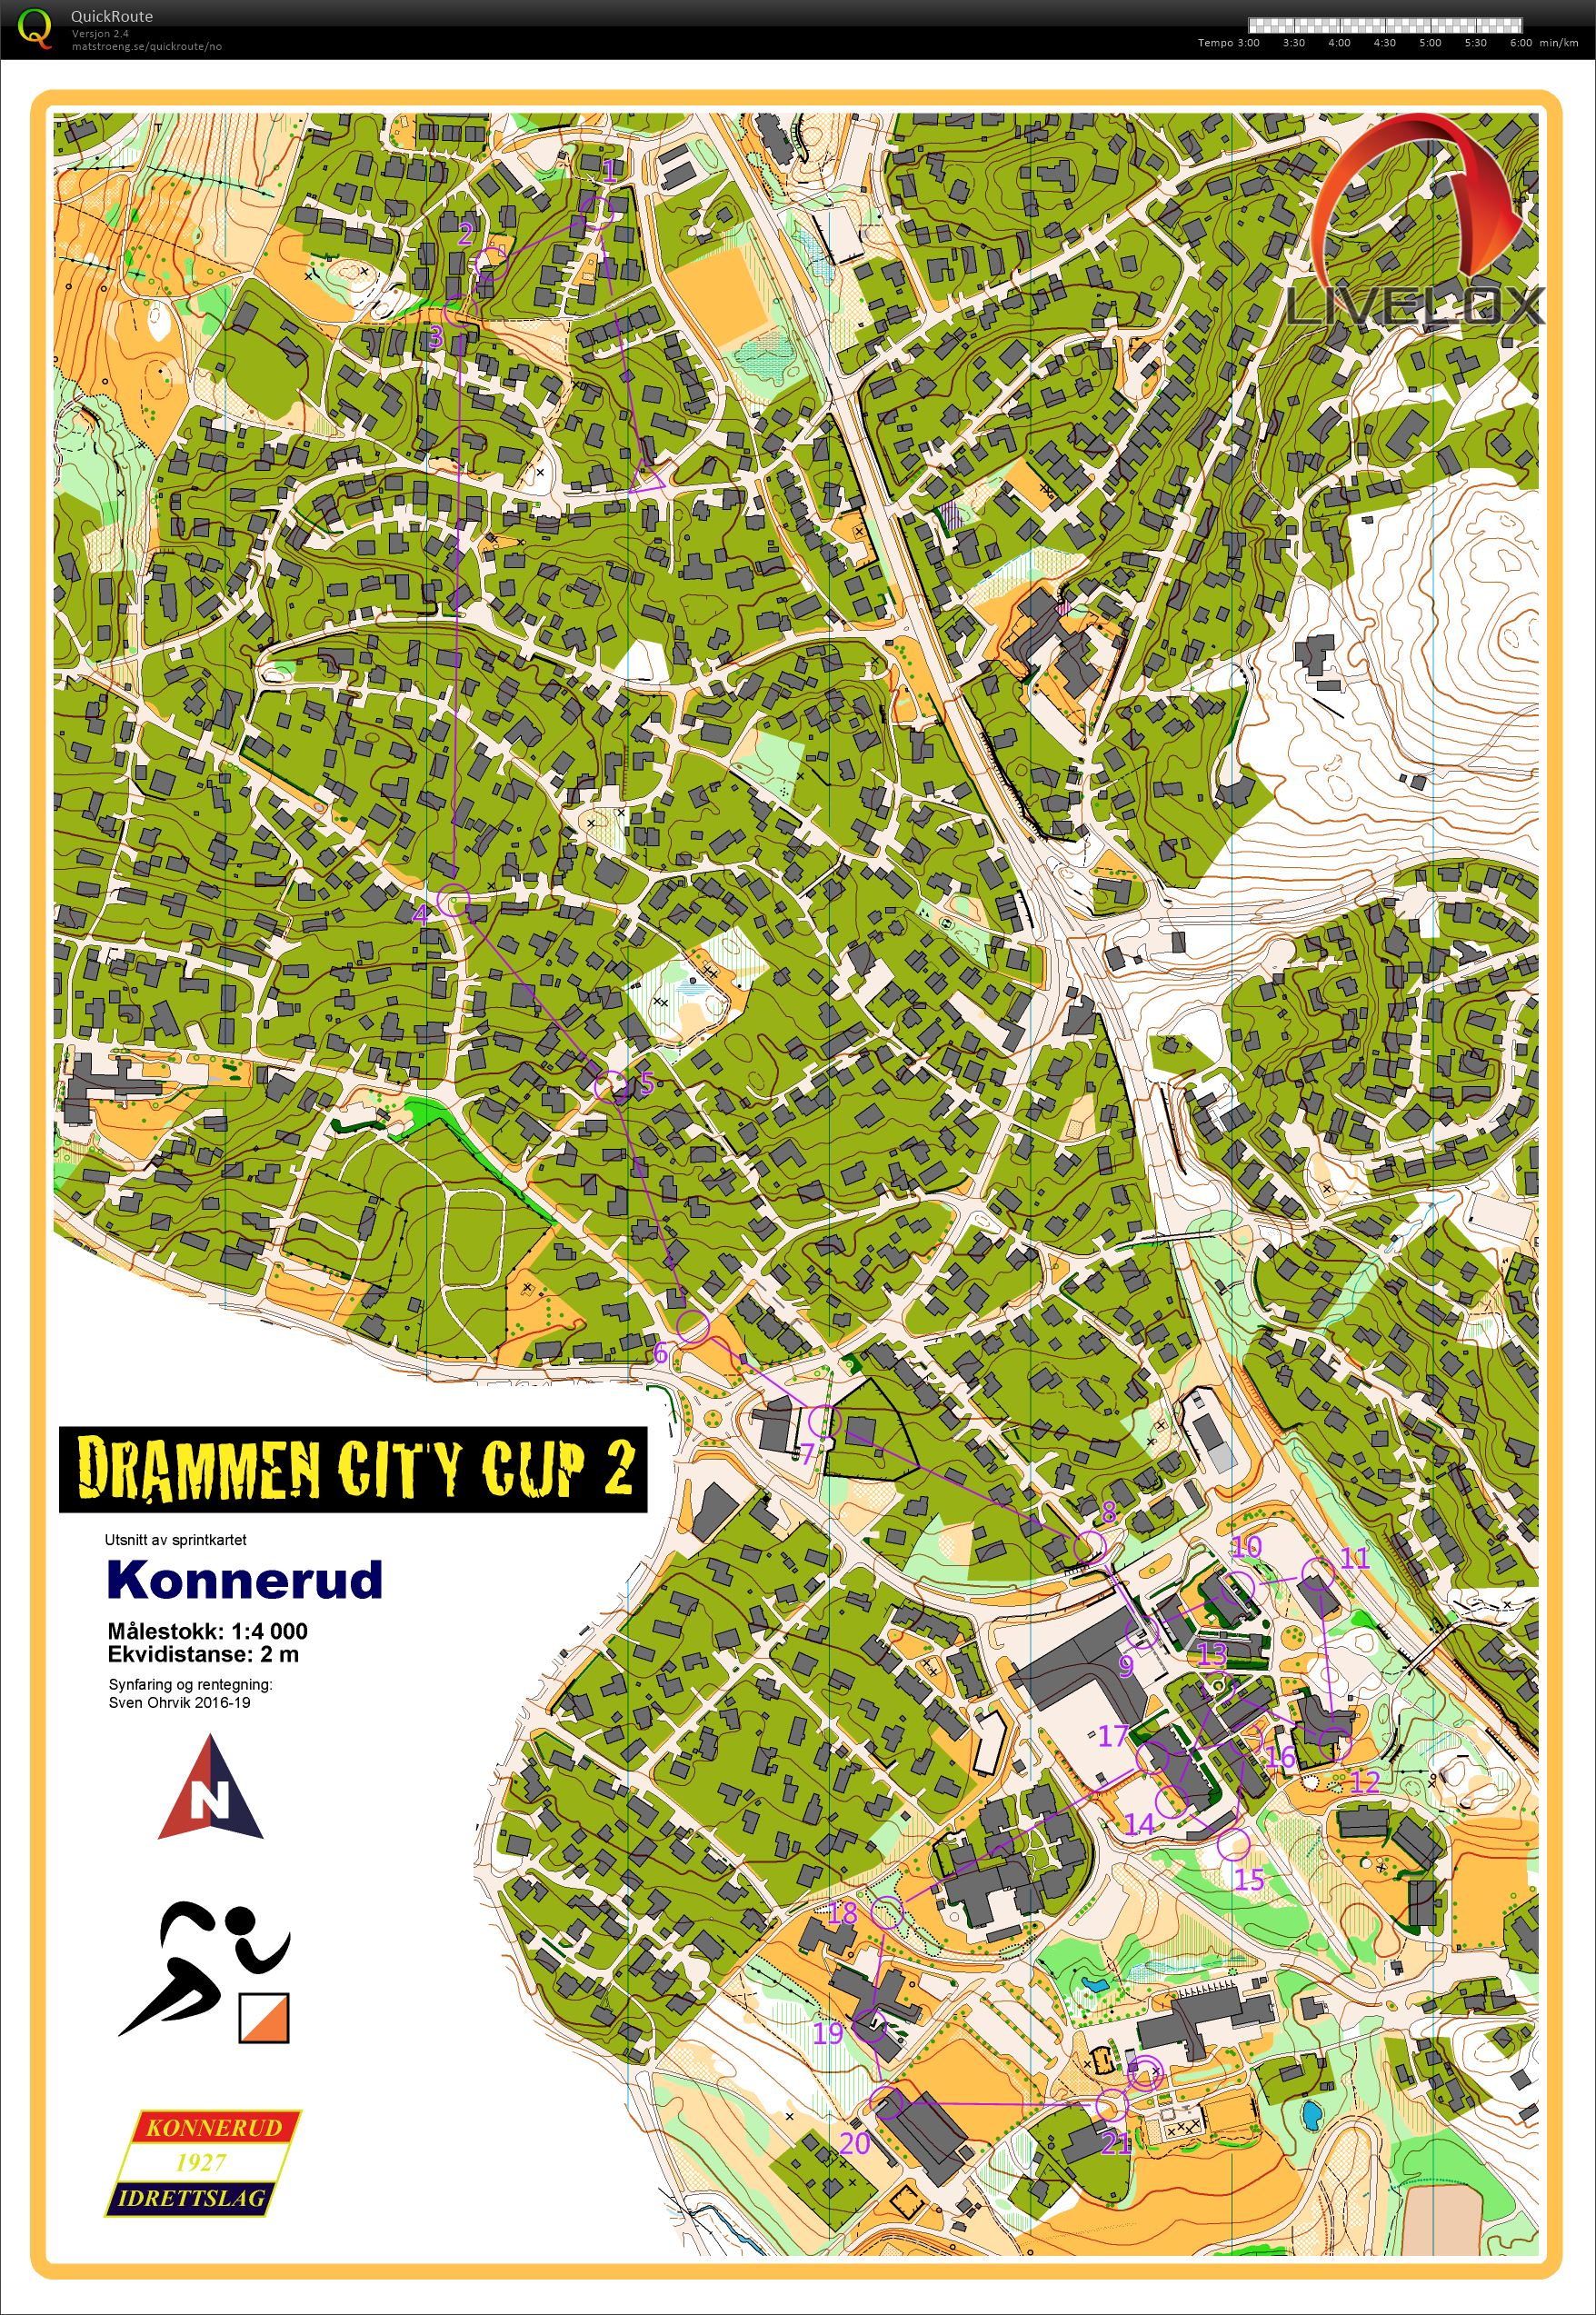 Drammen City Cup løp 2 (11-04-2019)